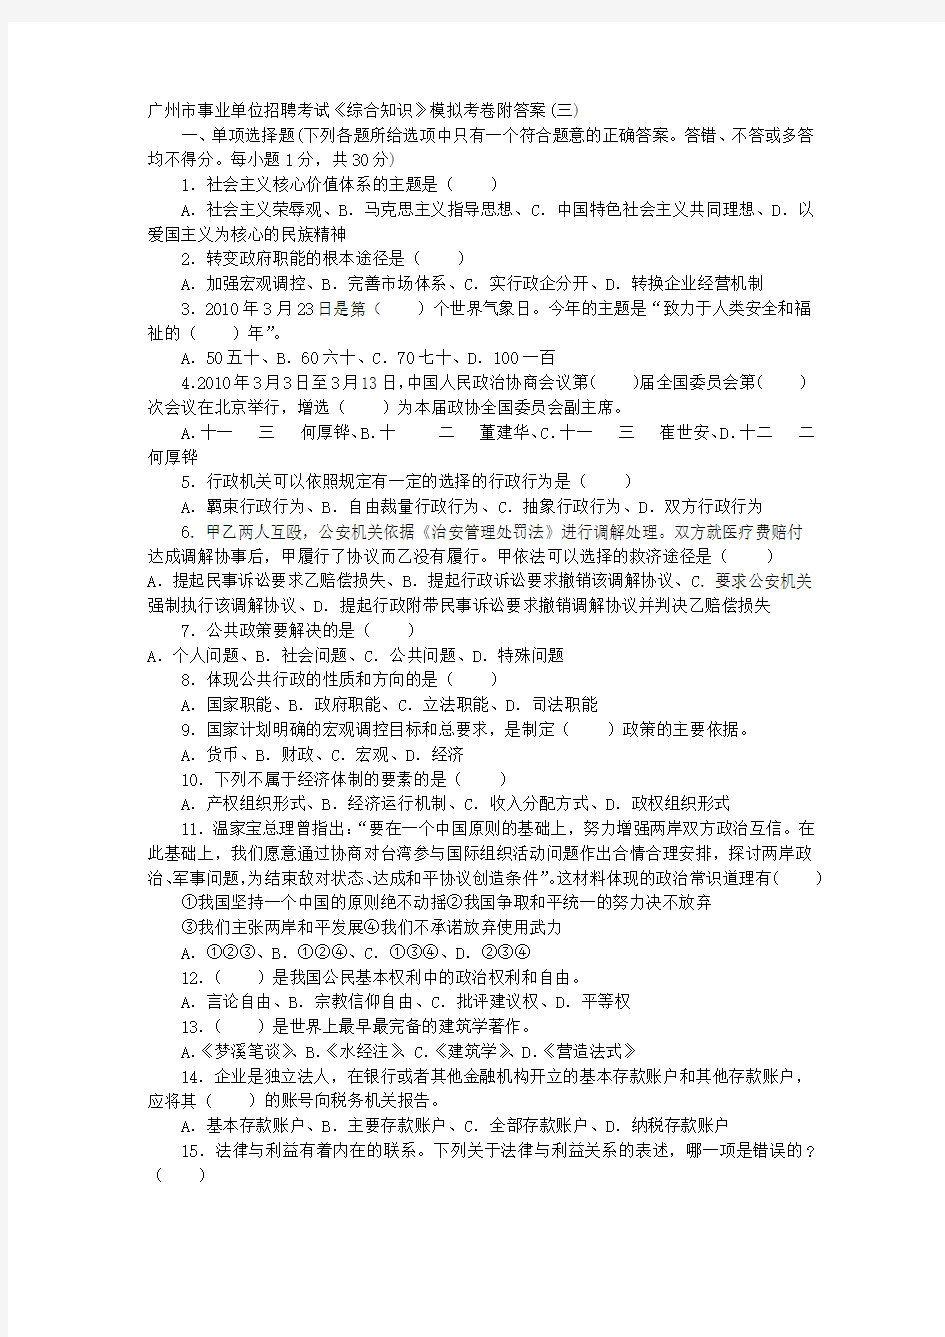 广州市事业单位招聘考试《综合知识》模拟考卷答案附(三)